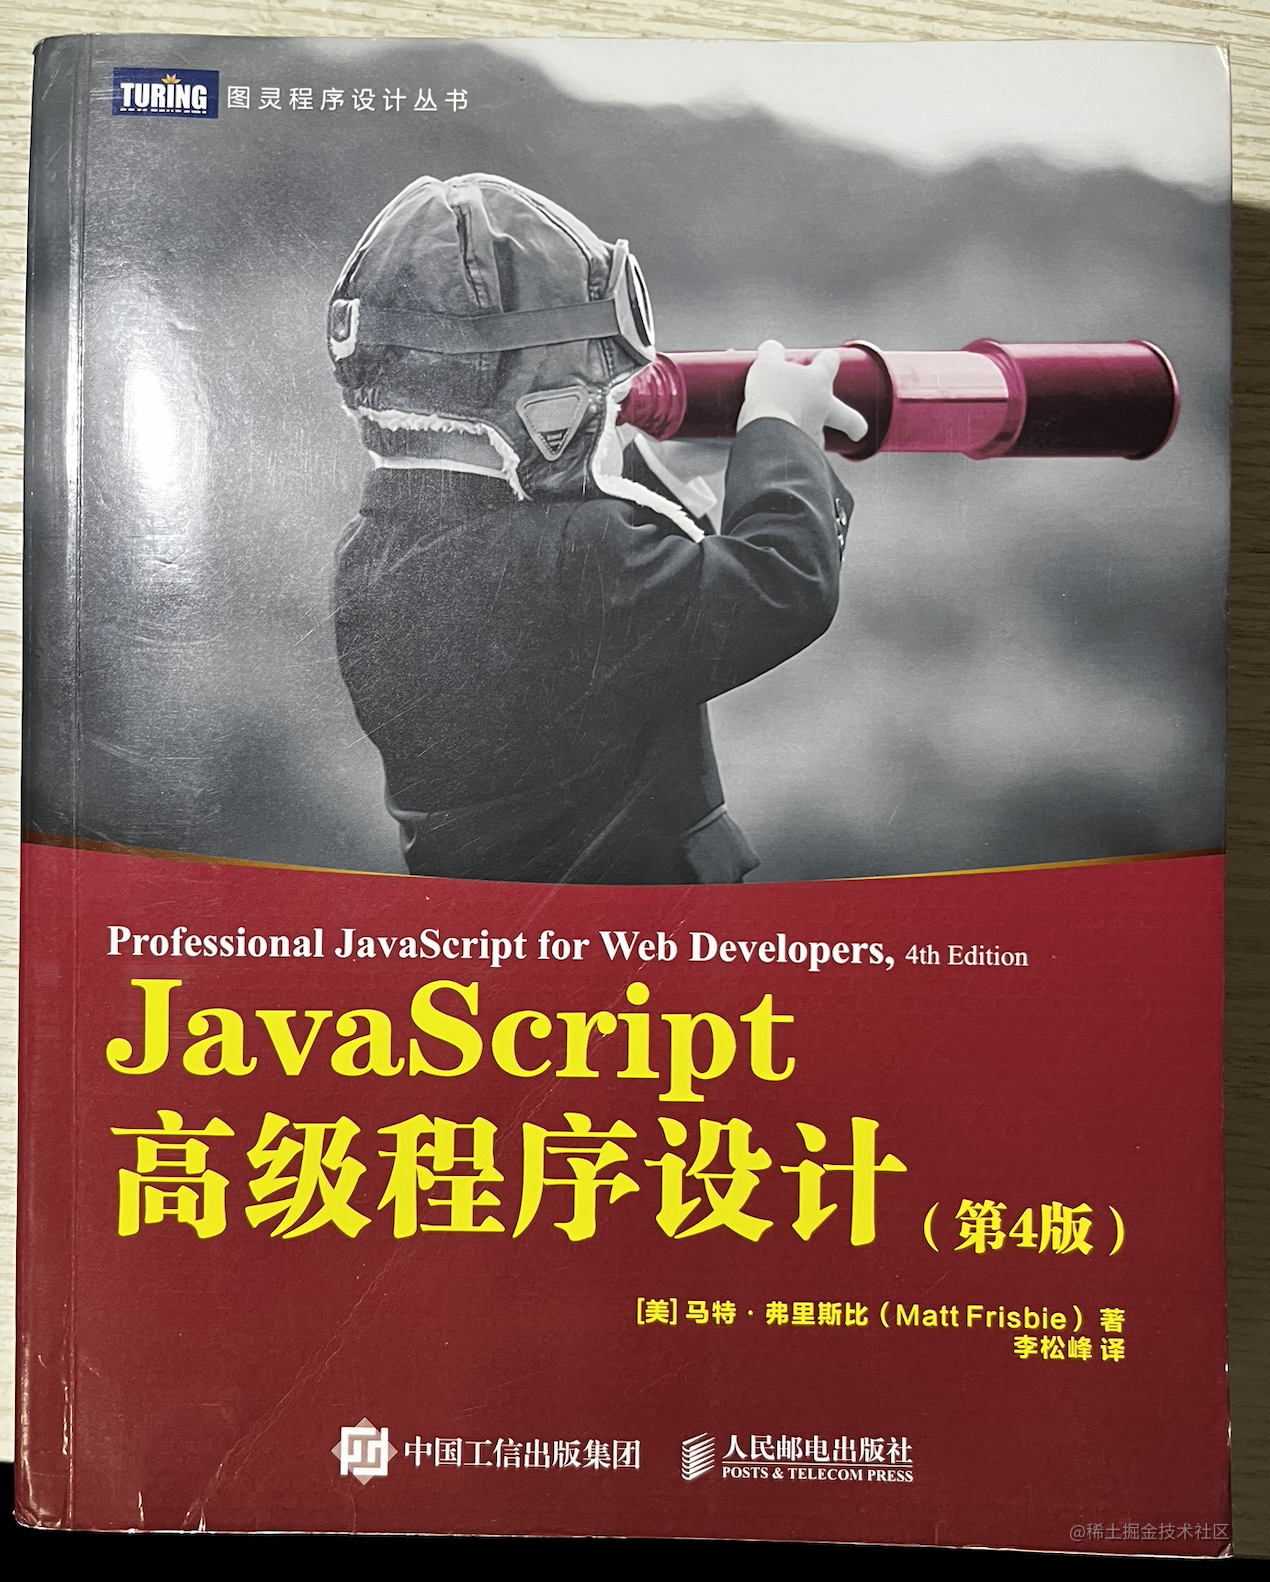 回顾经典-读《JavaScript高级程序设计》-烟雨网